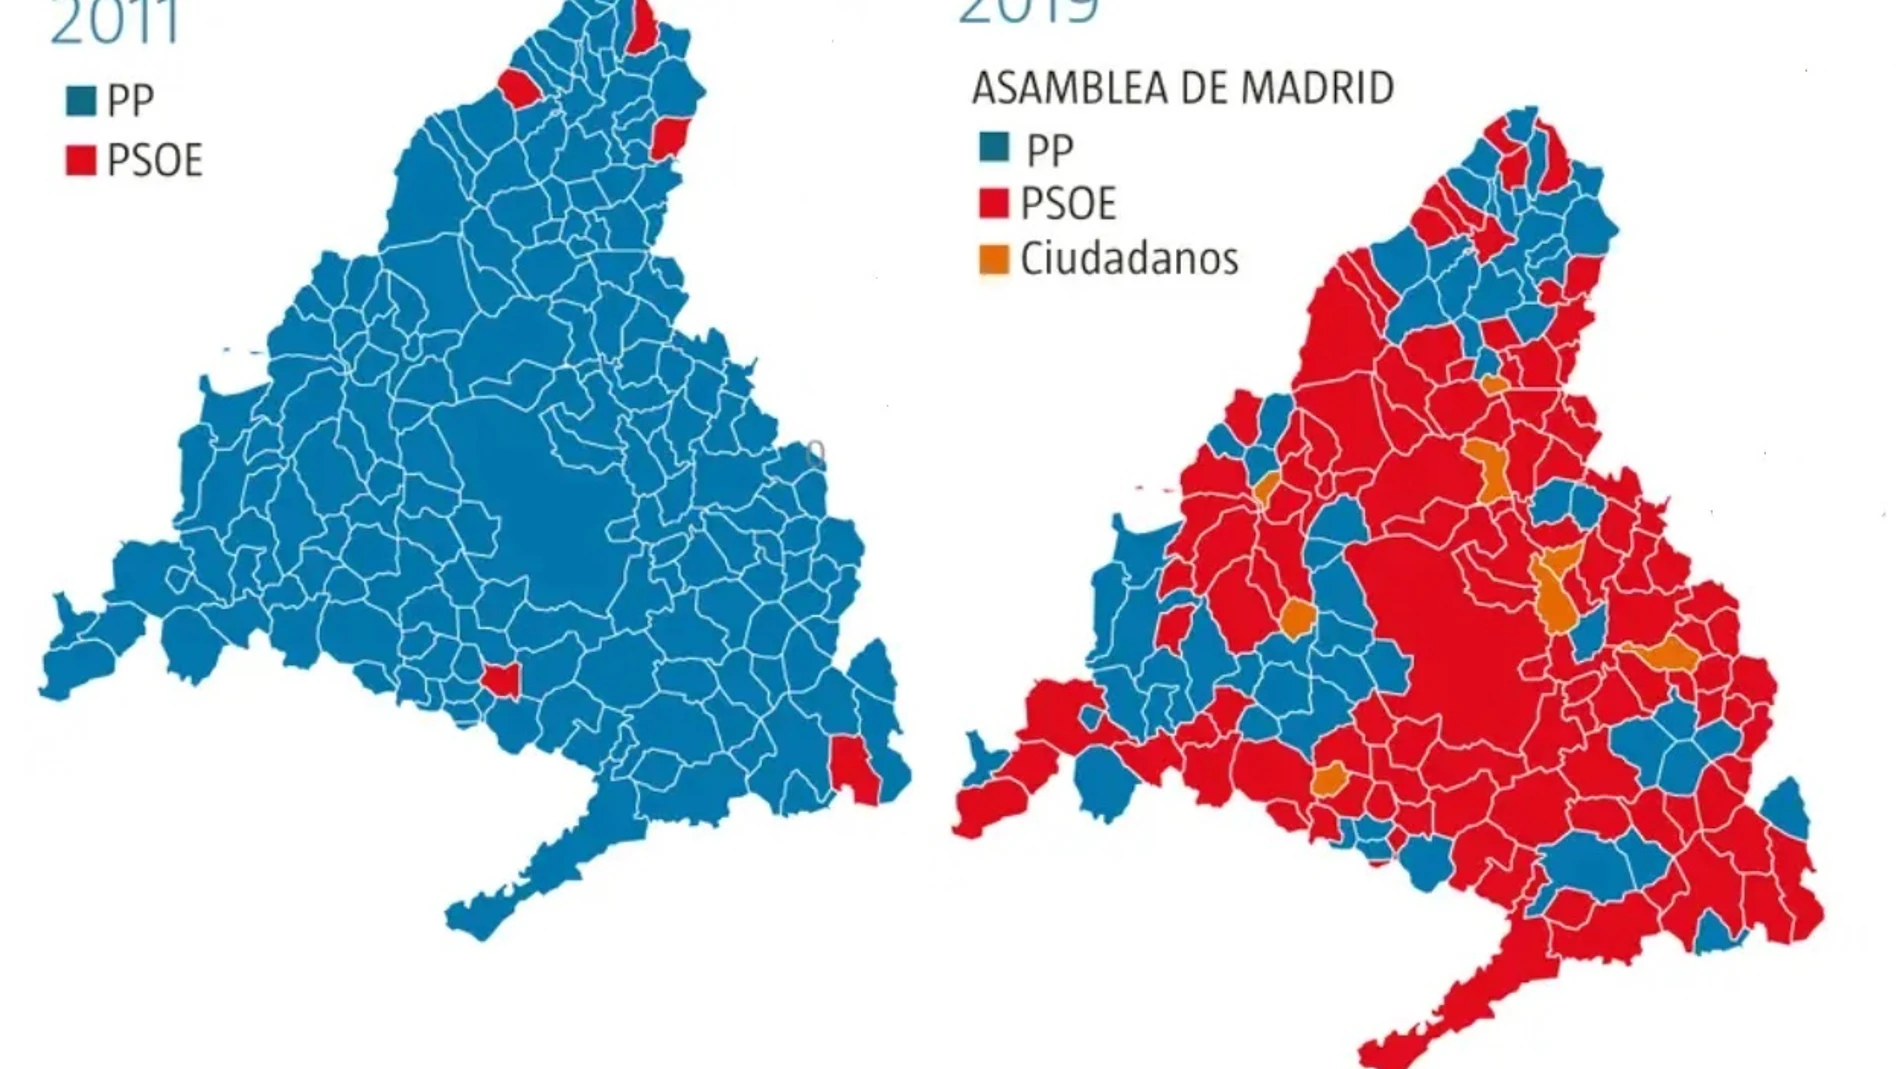 Evolución del voto en Madrid desde 2011